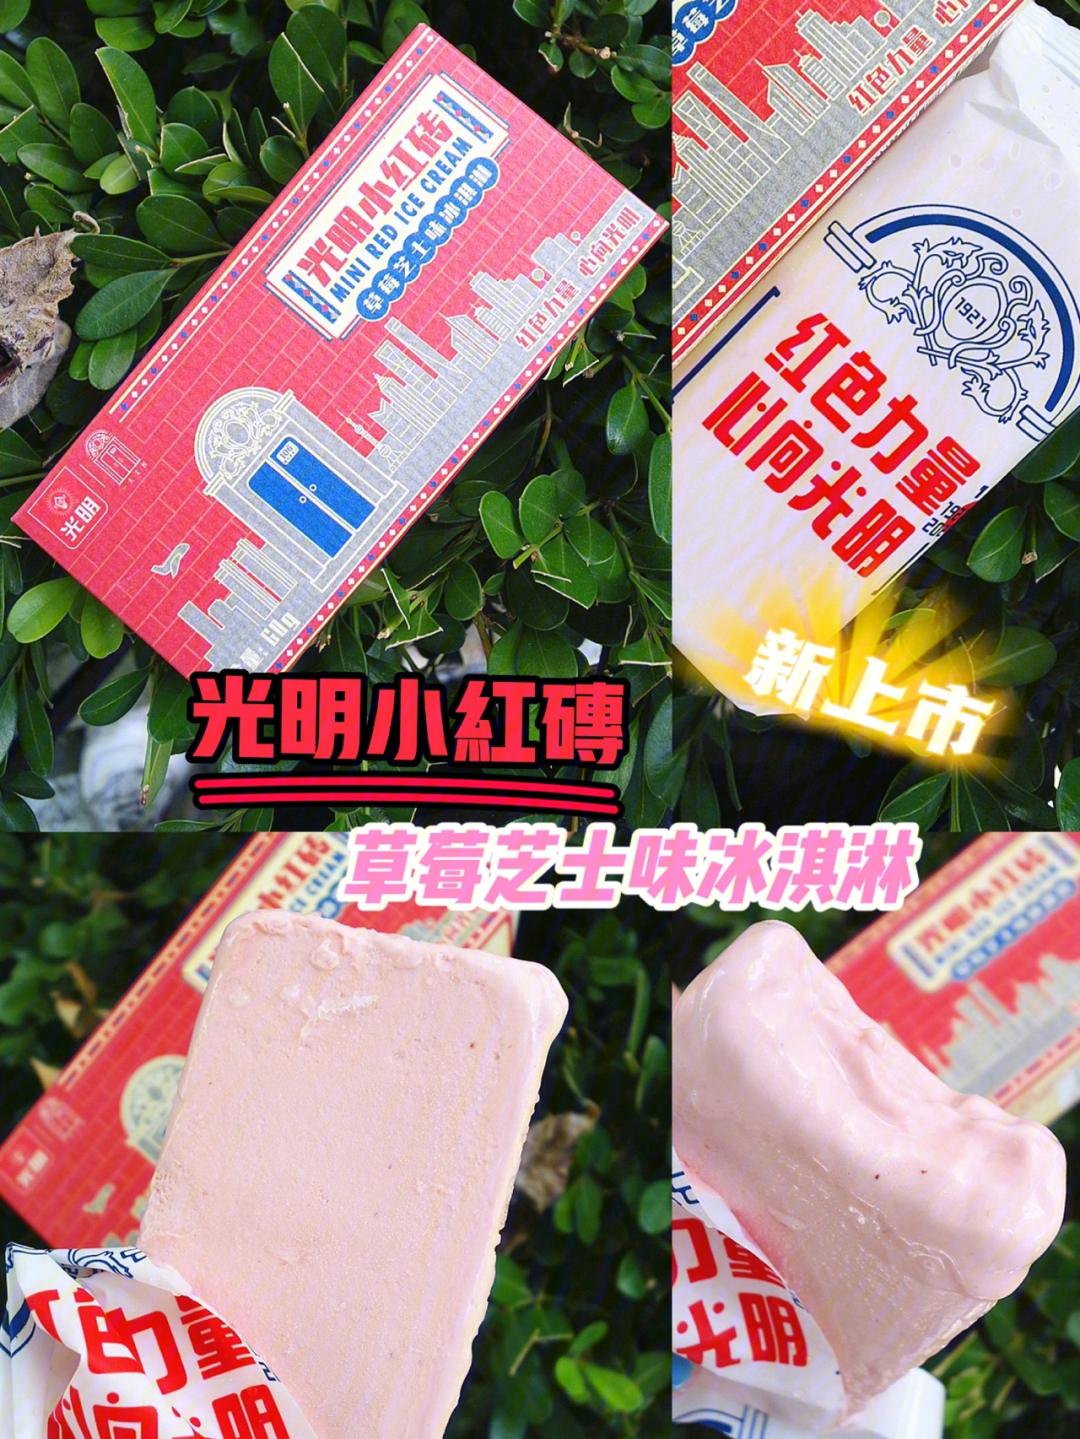 9515品牌:光明90品名:小红砖草莓芝士味冰淇淋91净含量:60克